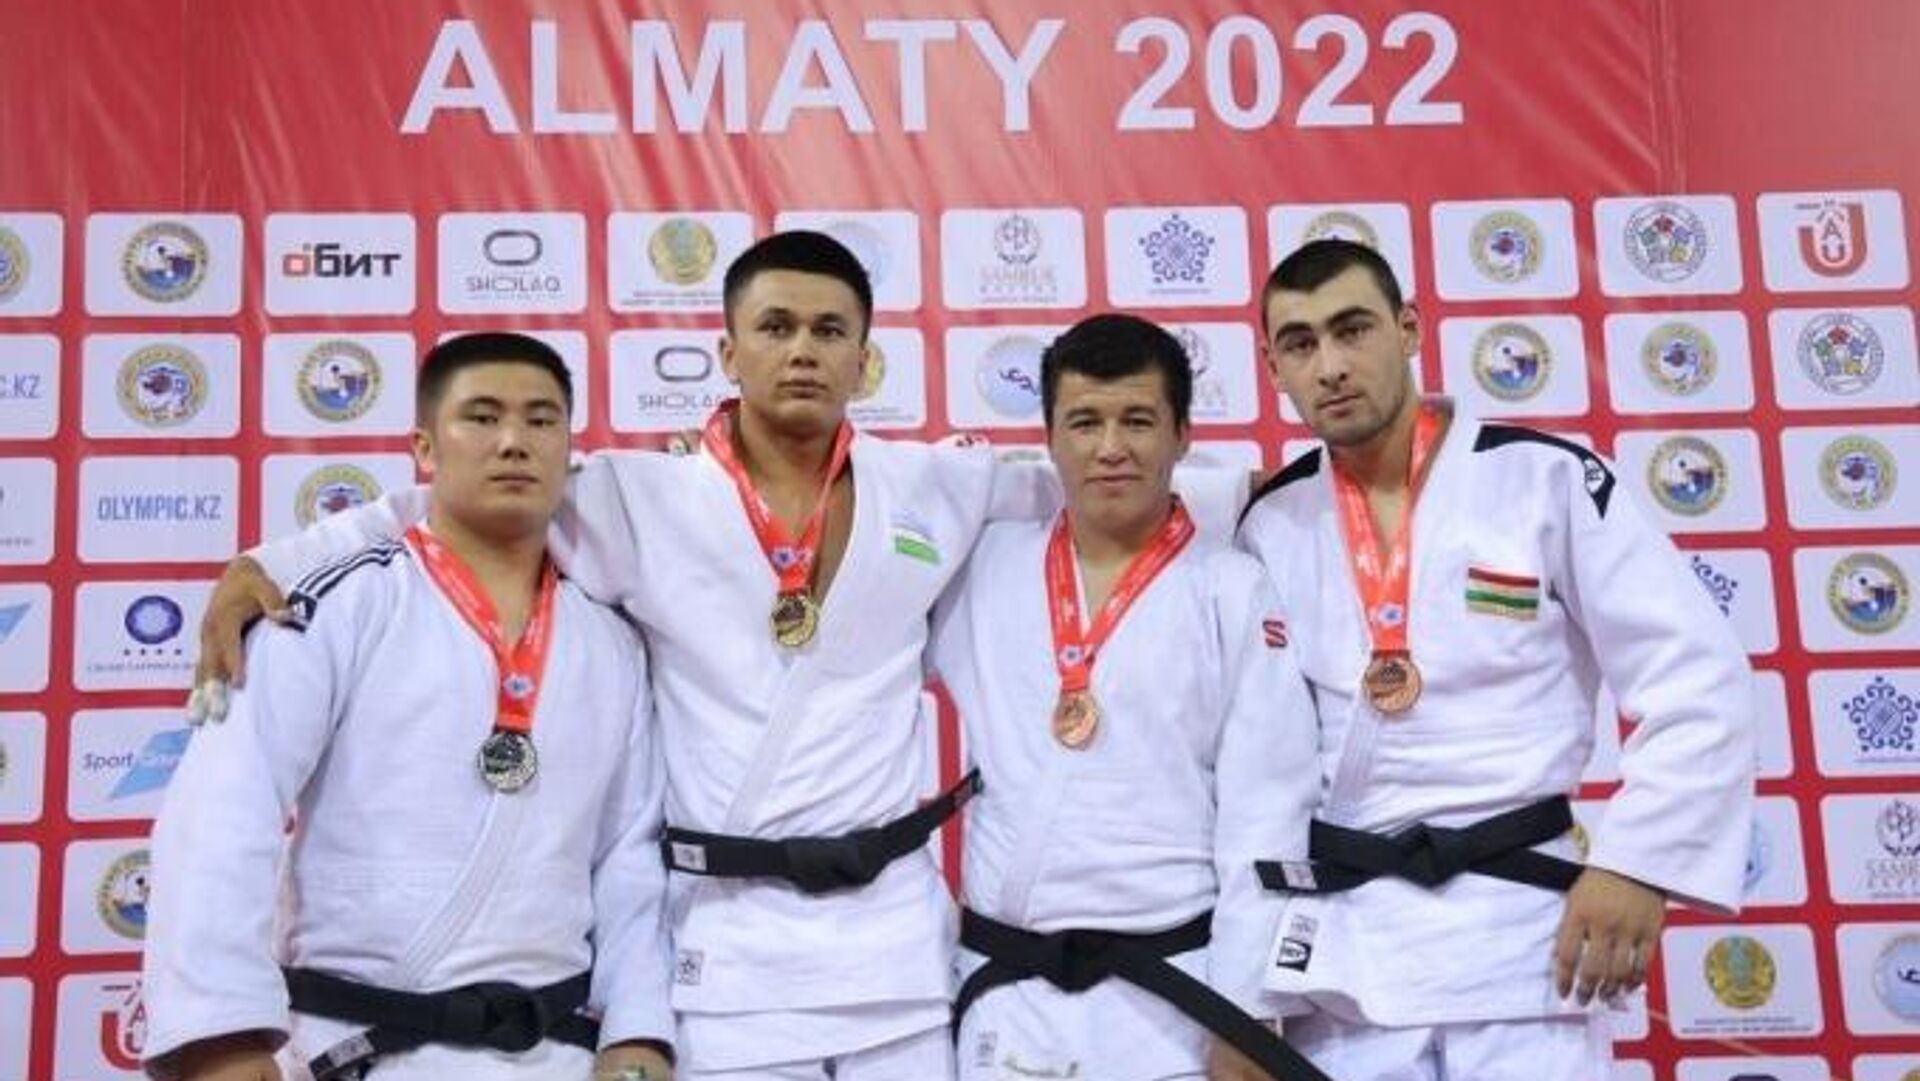 Таджикские дзюдоисты выиграли две медали на престижном турнире - Sputnik Таджикистан, 1920, 16.05.2022